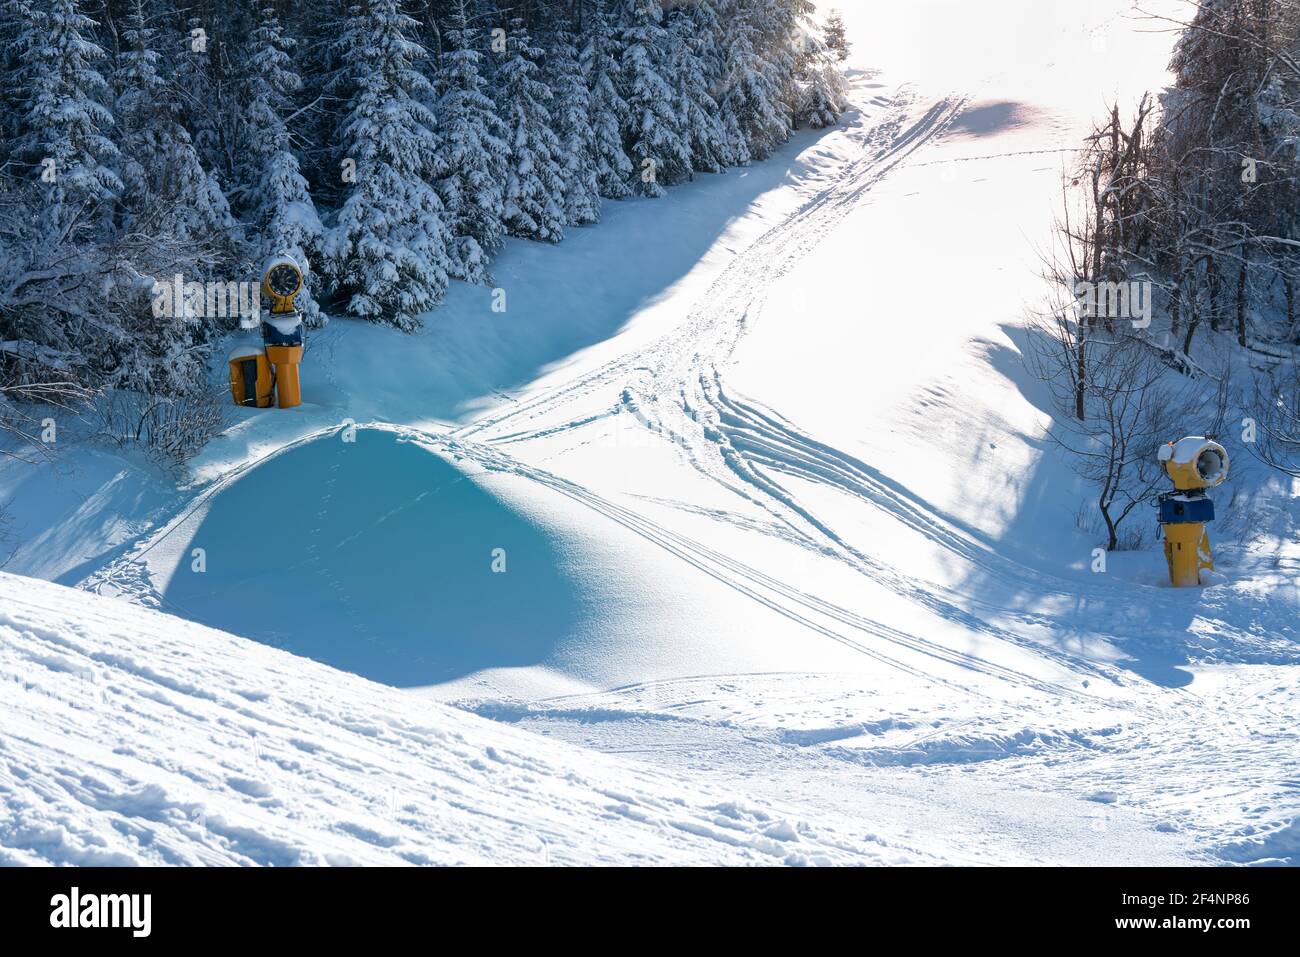 Wintersportgebiet mit Schnee und Sonnenschein. Schneesprünge bieten Möglichkeiten für Ski Cross oder Snowboard Cross. Winterberg, Deutschland Stockfoto